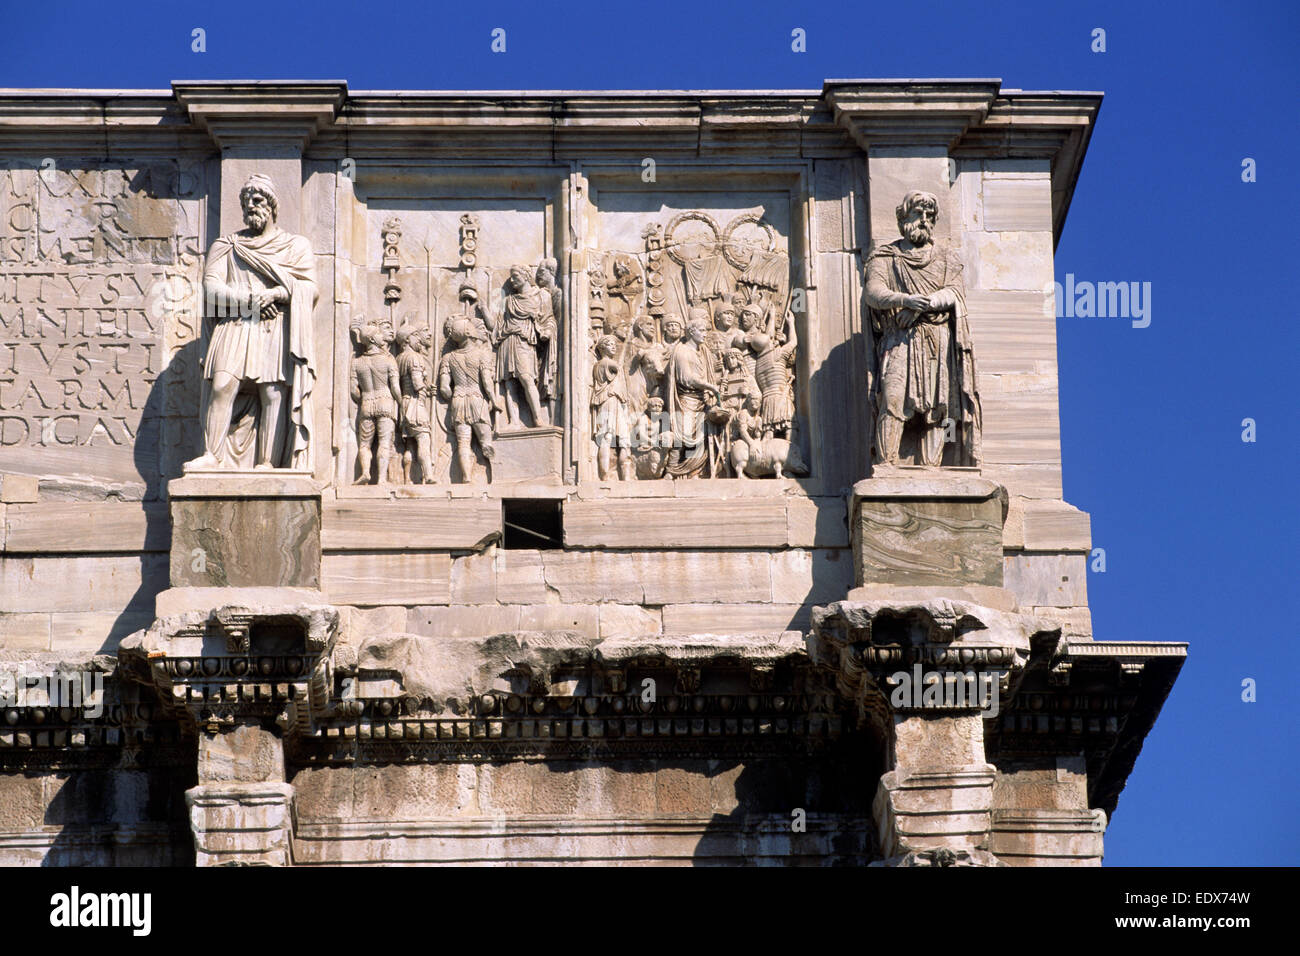 Italie, Rome, arche de Constantin, bas relief détail Banque D'Images